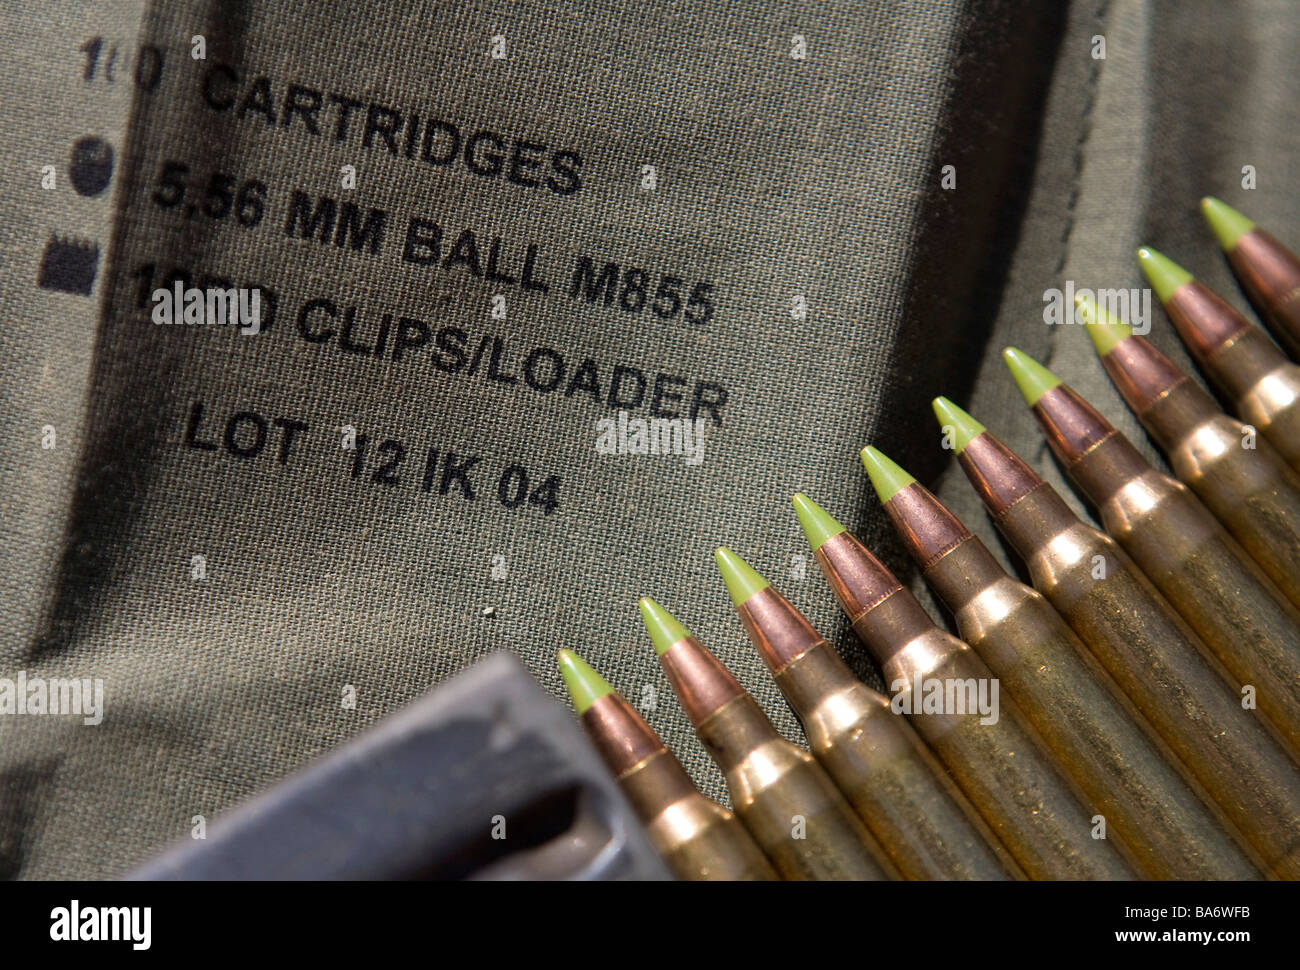 12 aprile 2009 Frederick Maryland di piccolo calibro munizioni fucile una penuria di munizioni ha colpito gli Stati Uniti Foto Stock